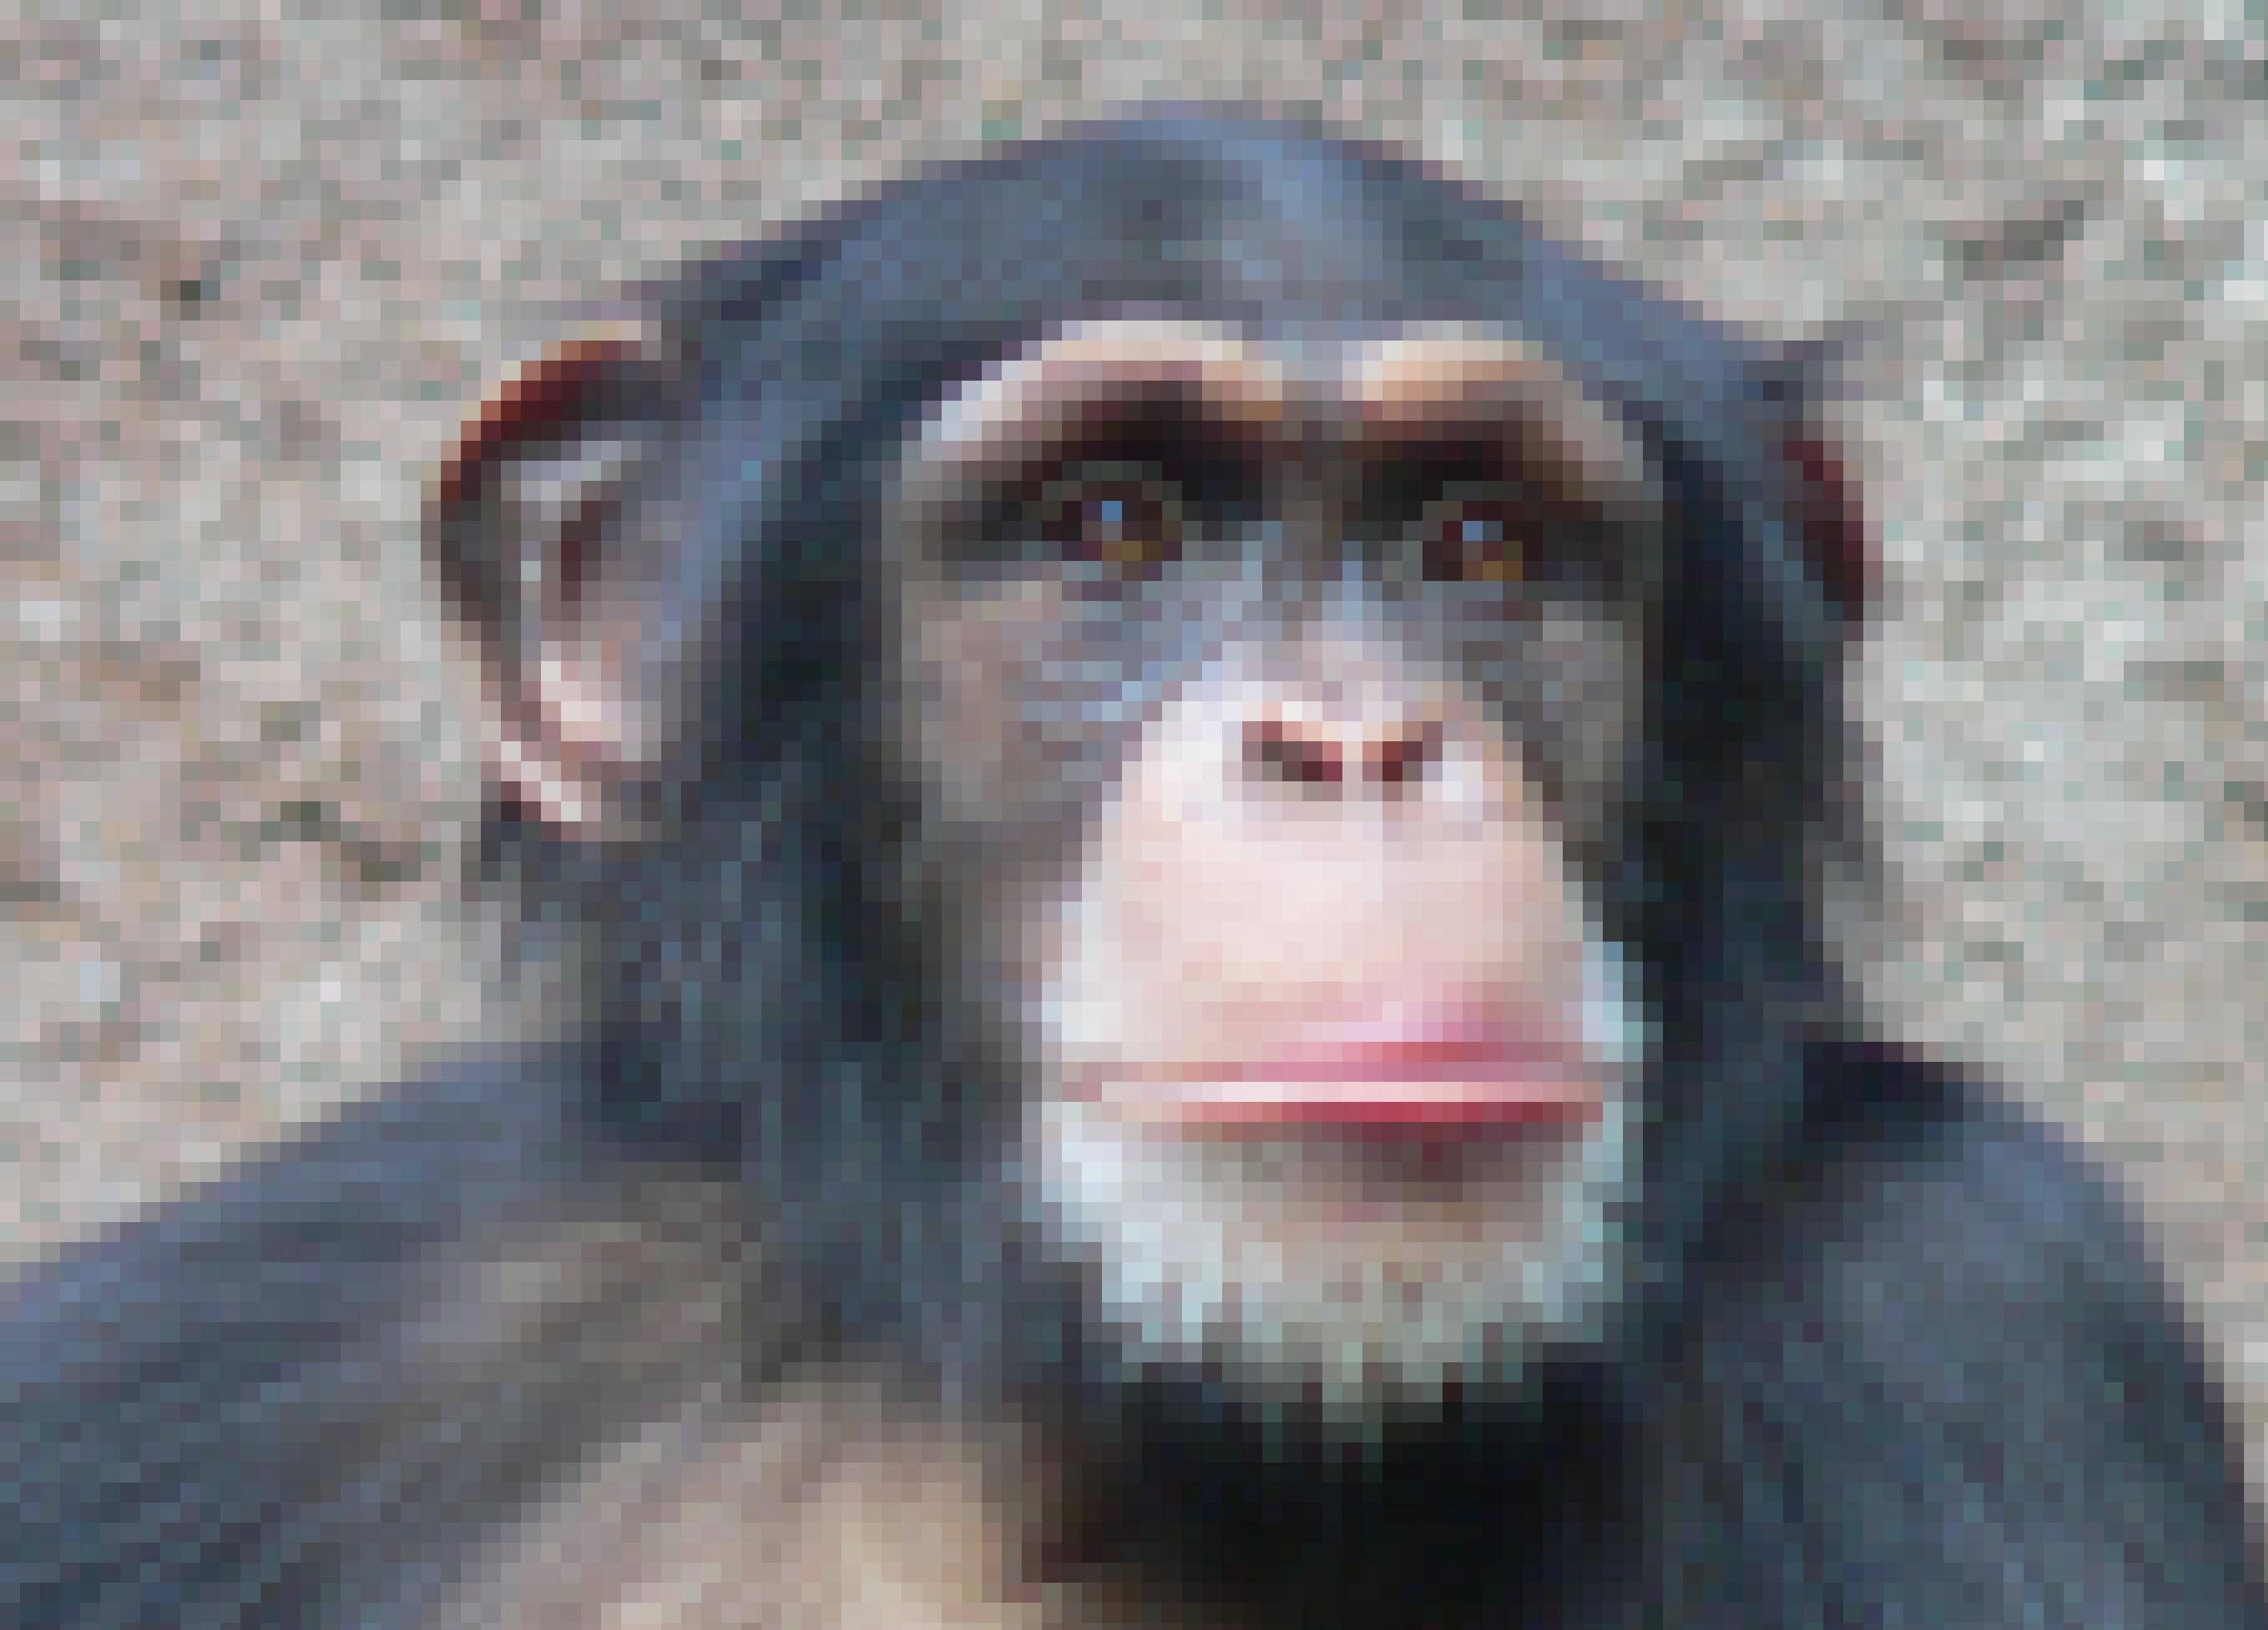 Hier ist der Kopf eines Schimpansen aus dem Zoo Leipzig zu sehen. Diese Affen sind die nächsten Verwandten des Menschen und sie verwenden bereits einfache Werkzeuge.Mit Steinen knacken sie etwa Nüsse oder mit Stöcken sammeln sie Ameisen. Wissenschaftler halten es daher für möglich, dass auch Vormenschen, deren Gehirn kaum größer war als das von Schimpansen, bereits Steinwerkzeuge nutzten.